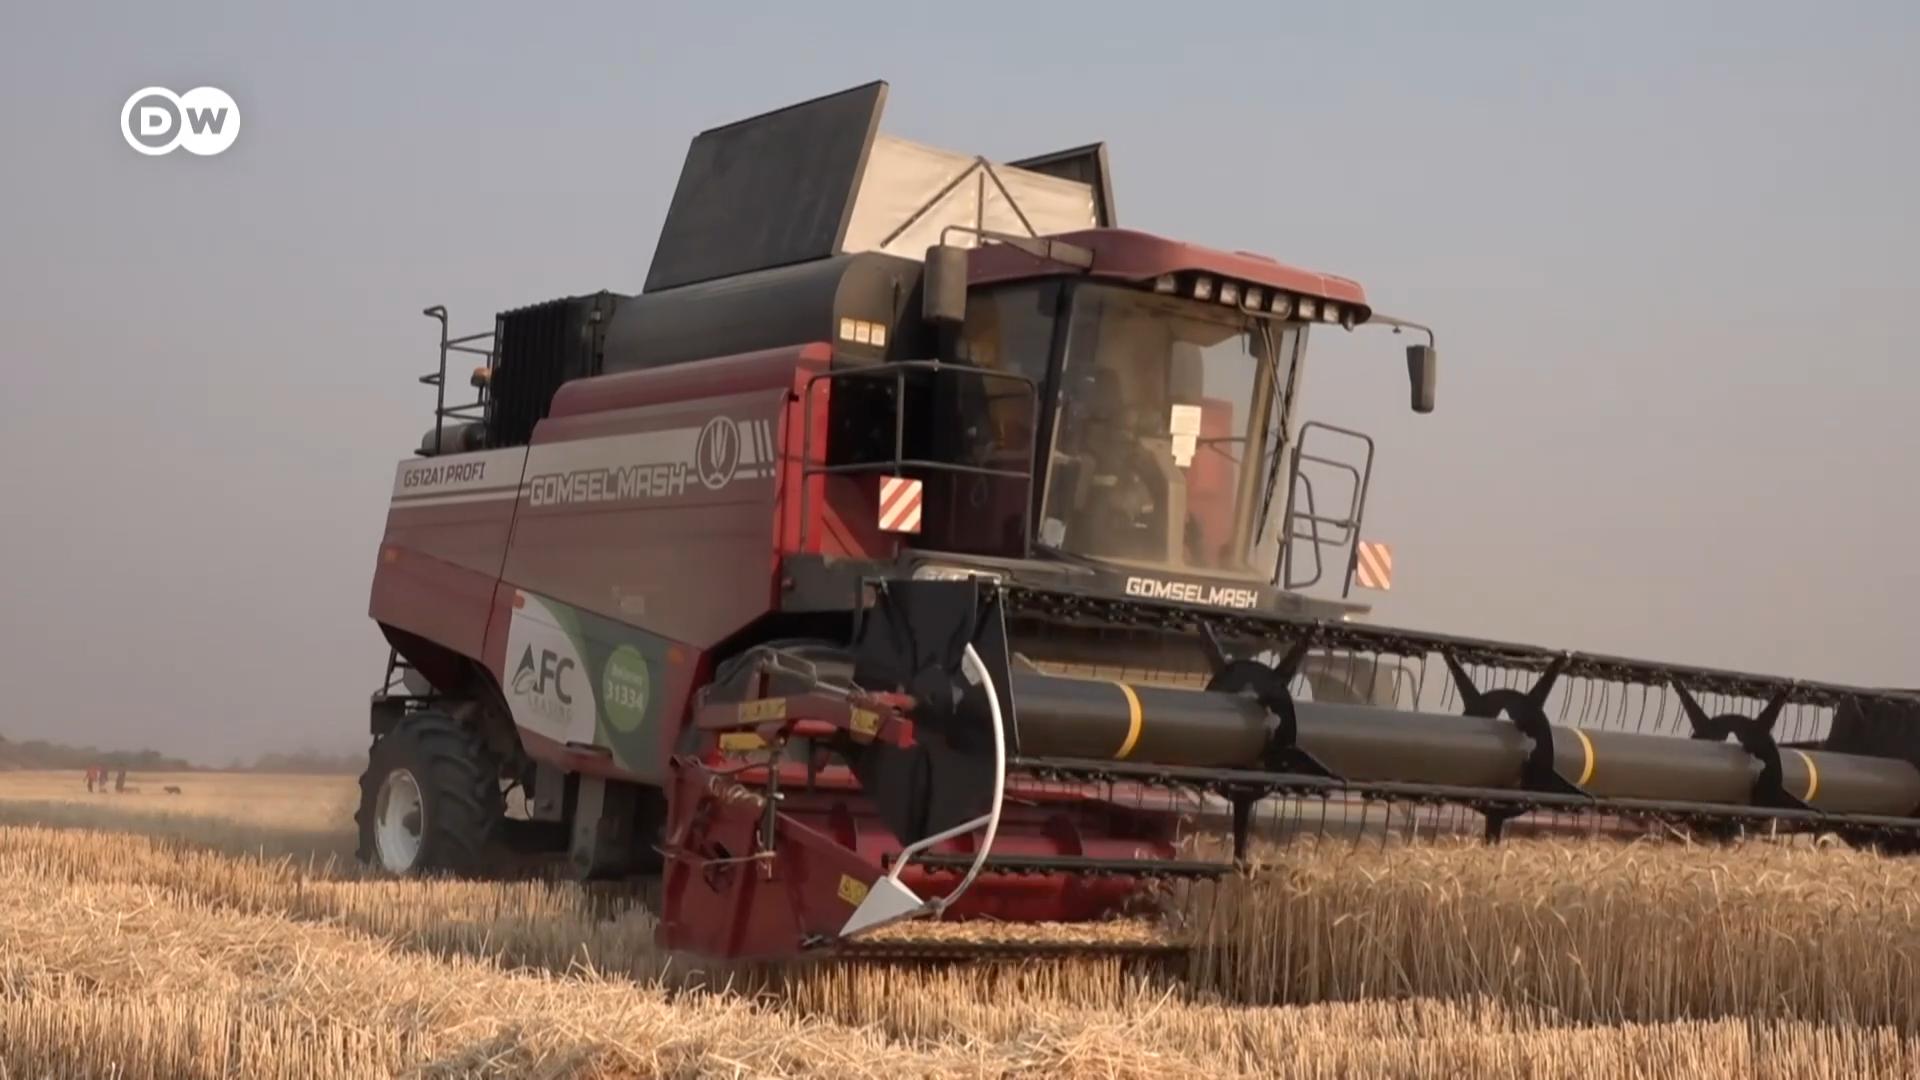 俄罗斯在乌克兰发动战争，导致全球许多产品短缺，小麦供应尤其不足。但危机有时也是转机。津巴布韦等国正计划实现小麦自给自足。在机械化和政府新政策的帮助下，津巴布韦今年的小麦收成预计将创新高。